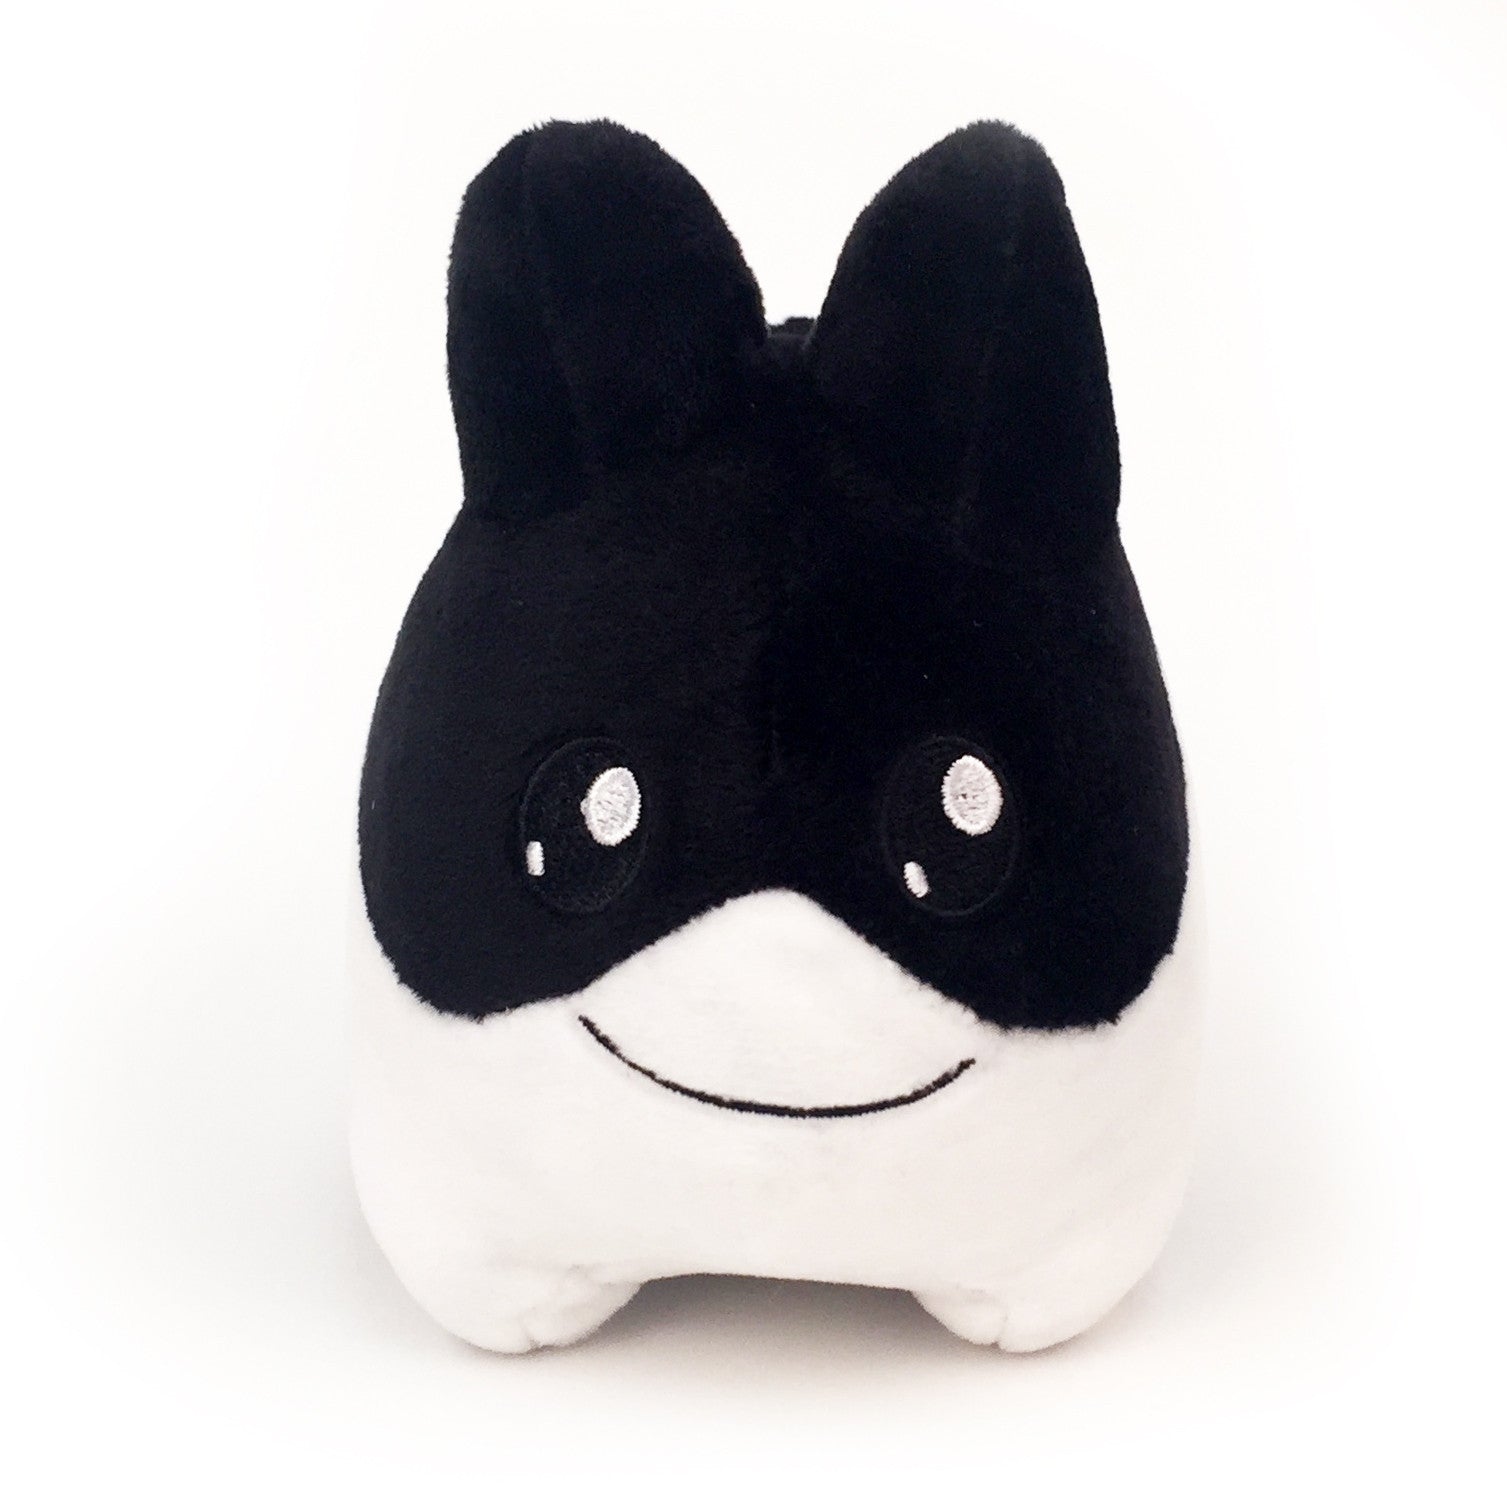 Black and White Litton 4.5” Small Plush Toy by Kidrobot - Mindzai
 - 1